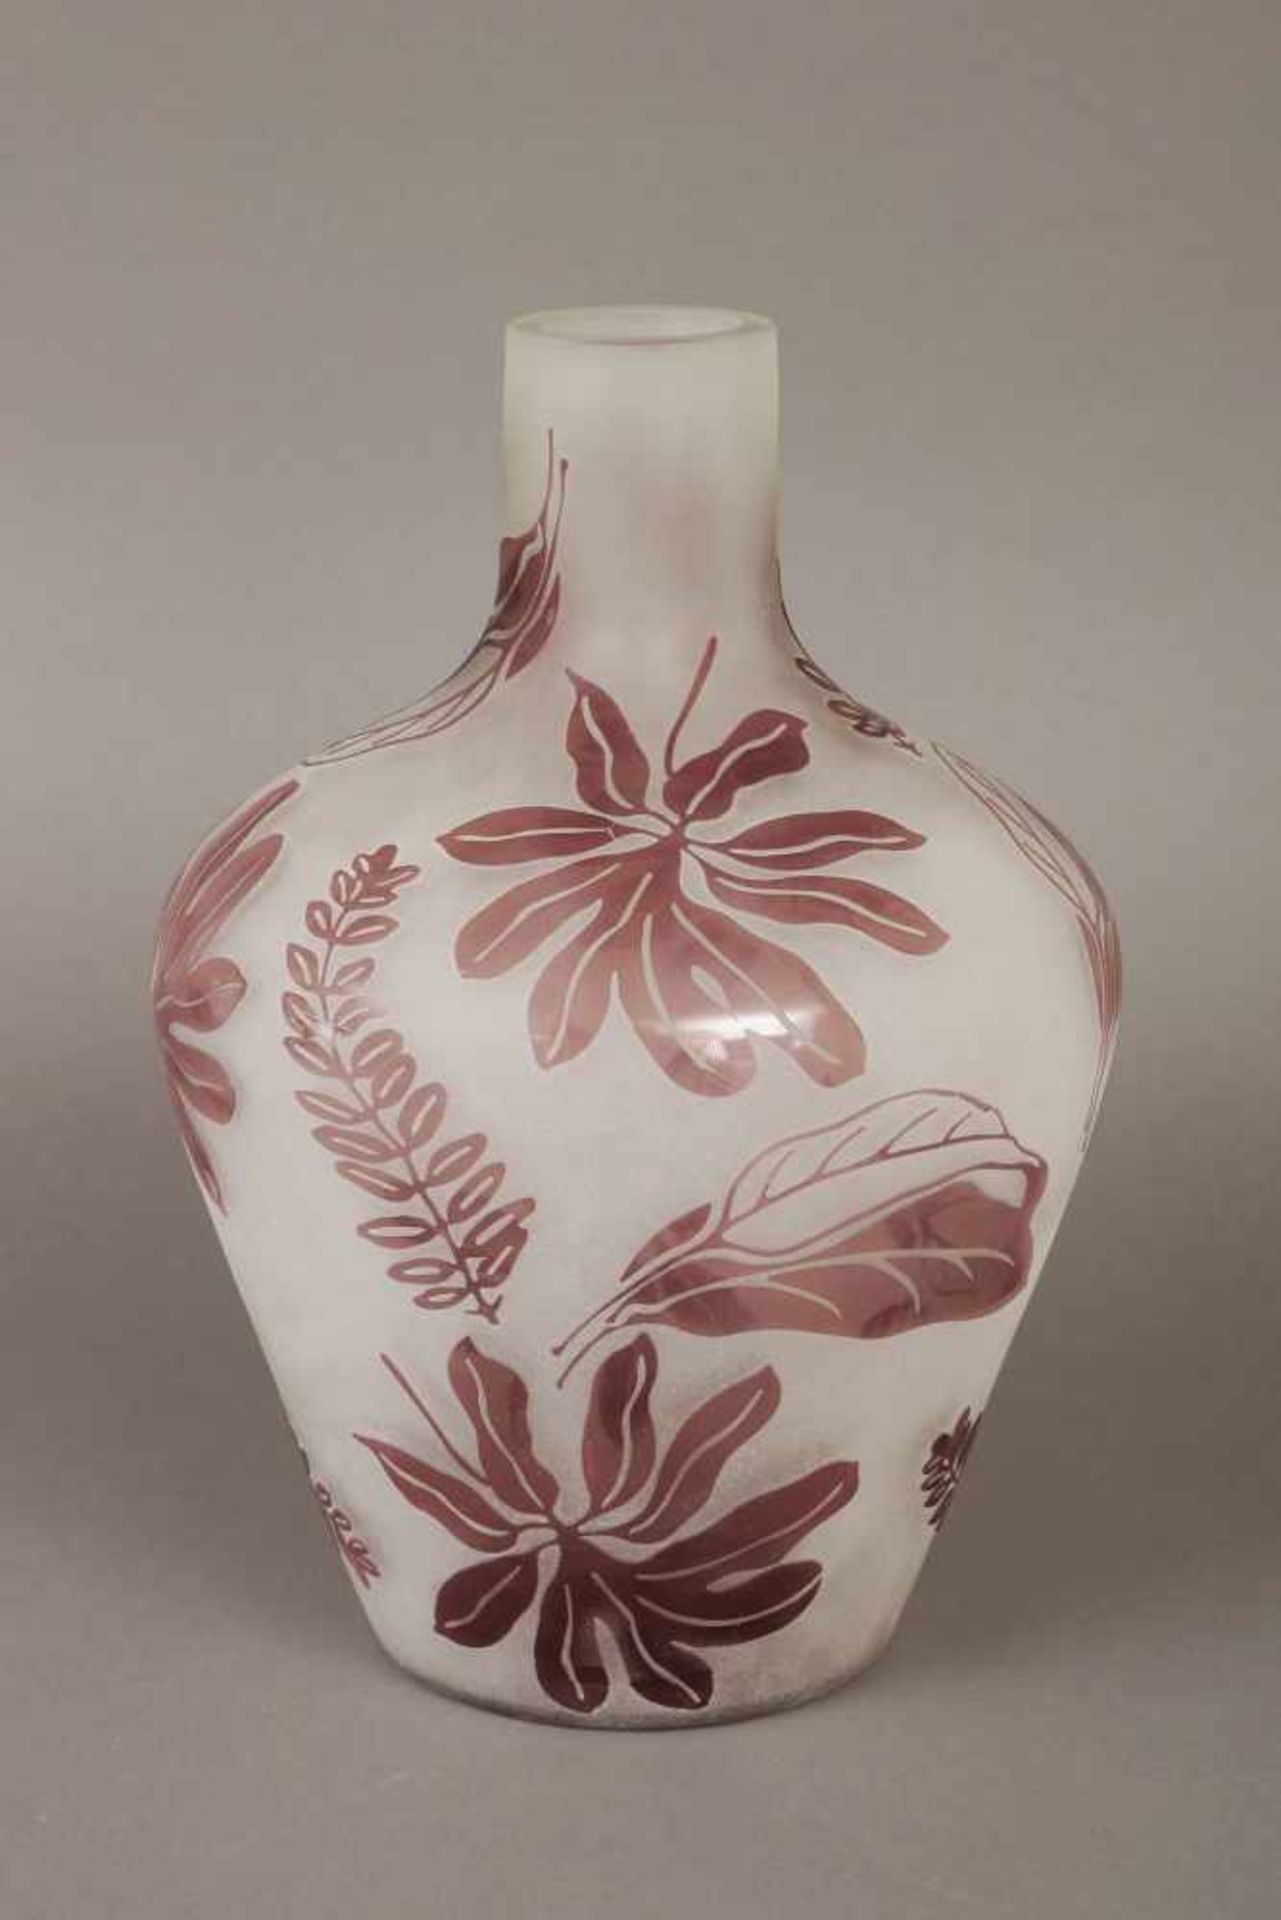 Vasegeschnittenes und geätztes Glas, braun überfangen, mit Blätterdekor, ungemarkt, H ca. 30cm